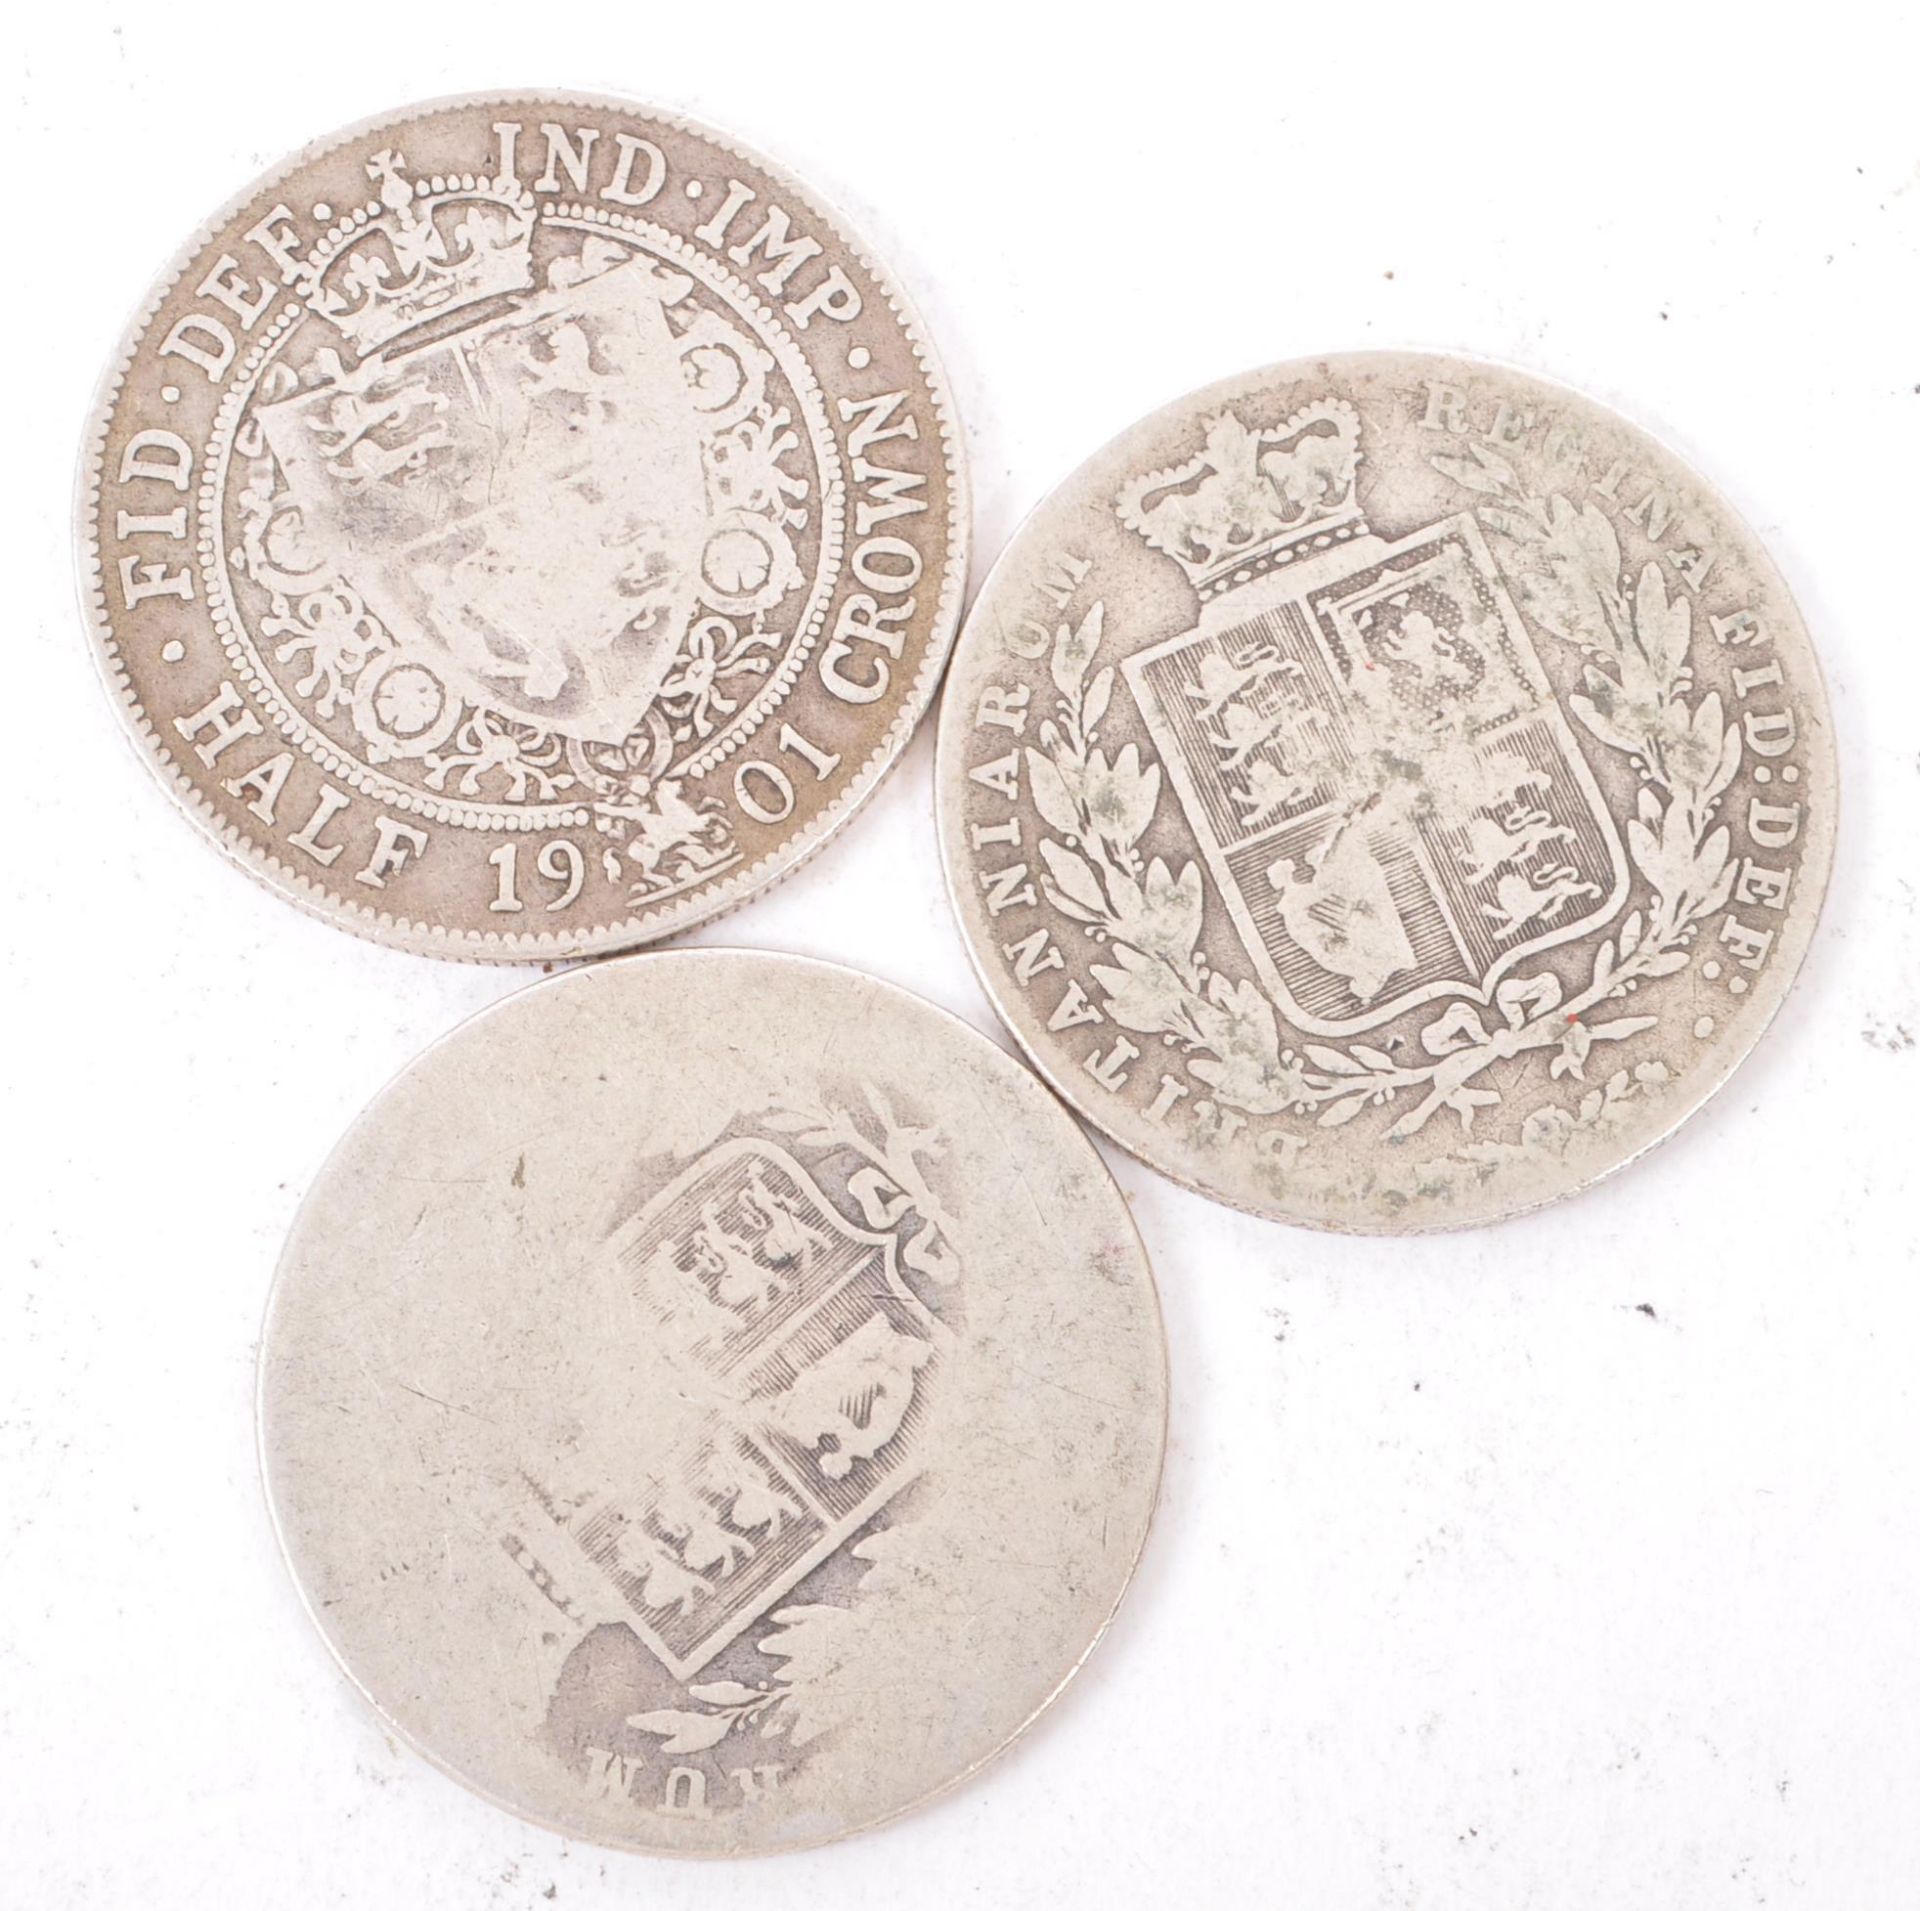 THREE QUEEN VICTORIA SILVER HALF CROWN COINS 1878 & 1901 - Image 2 of 2